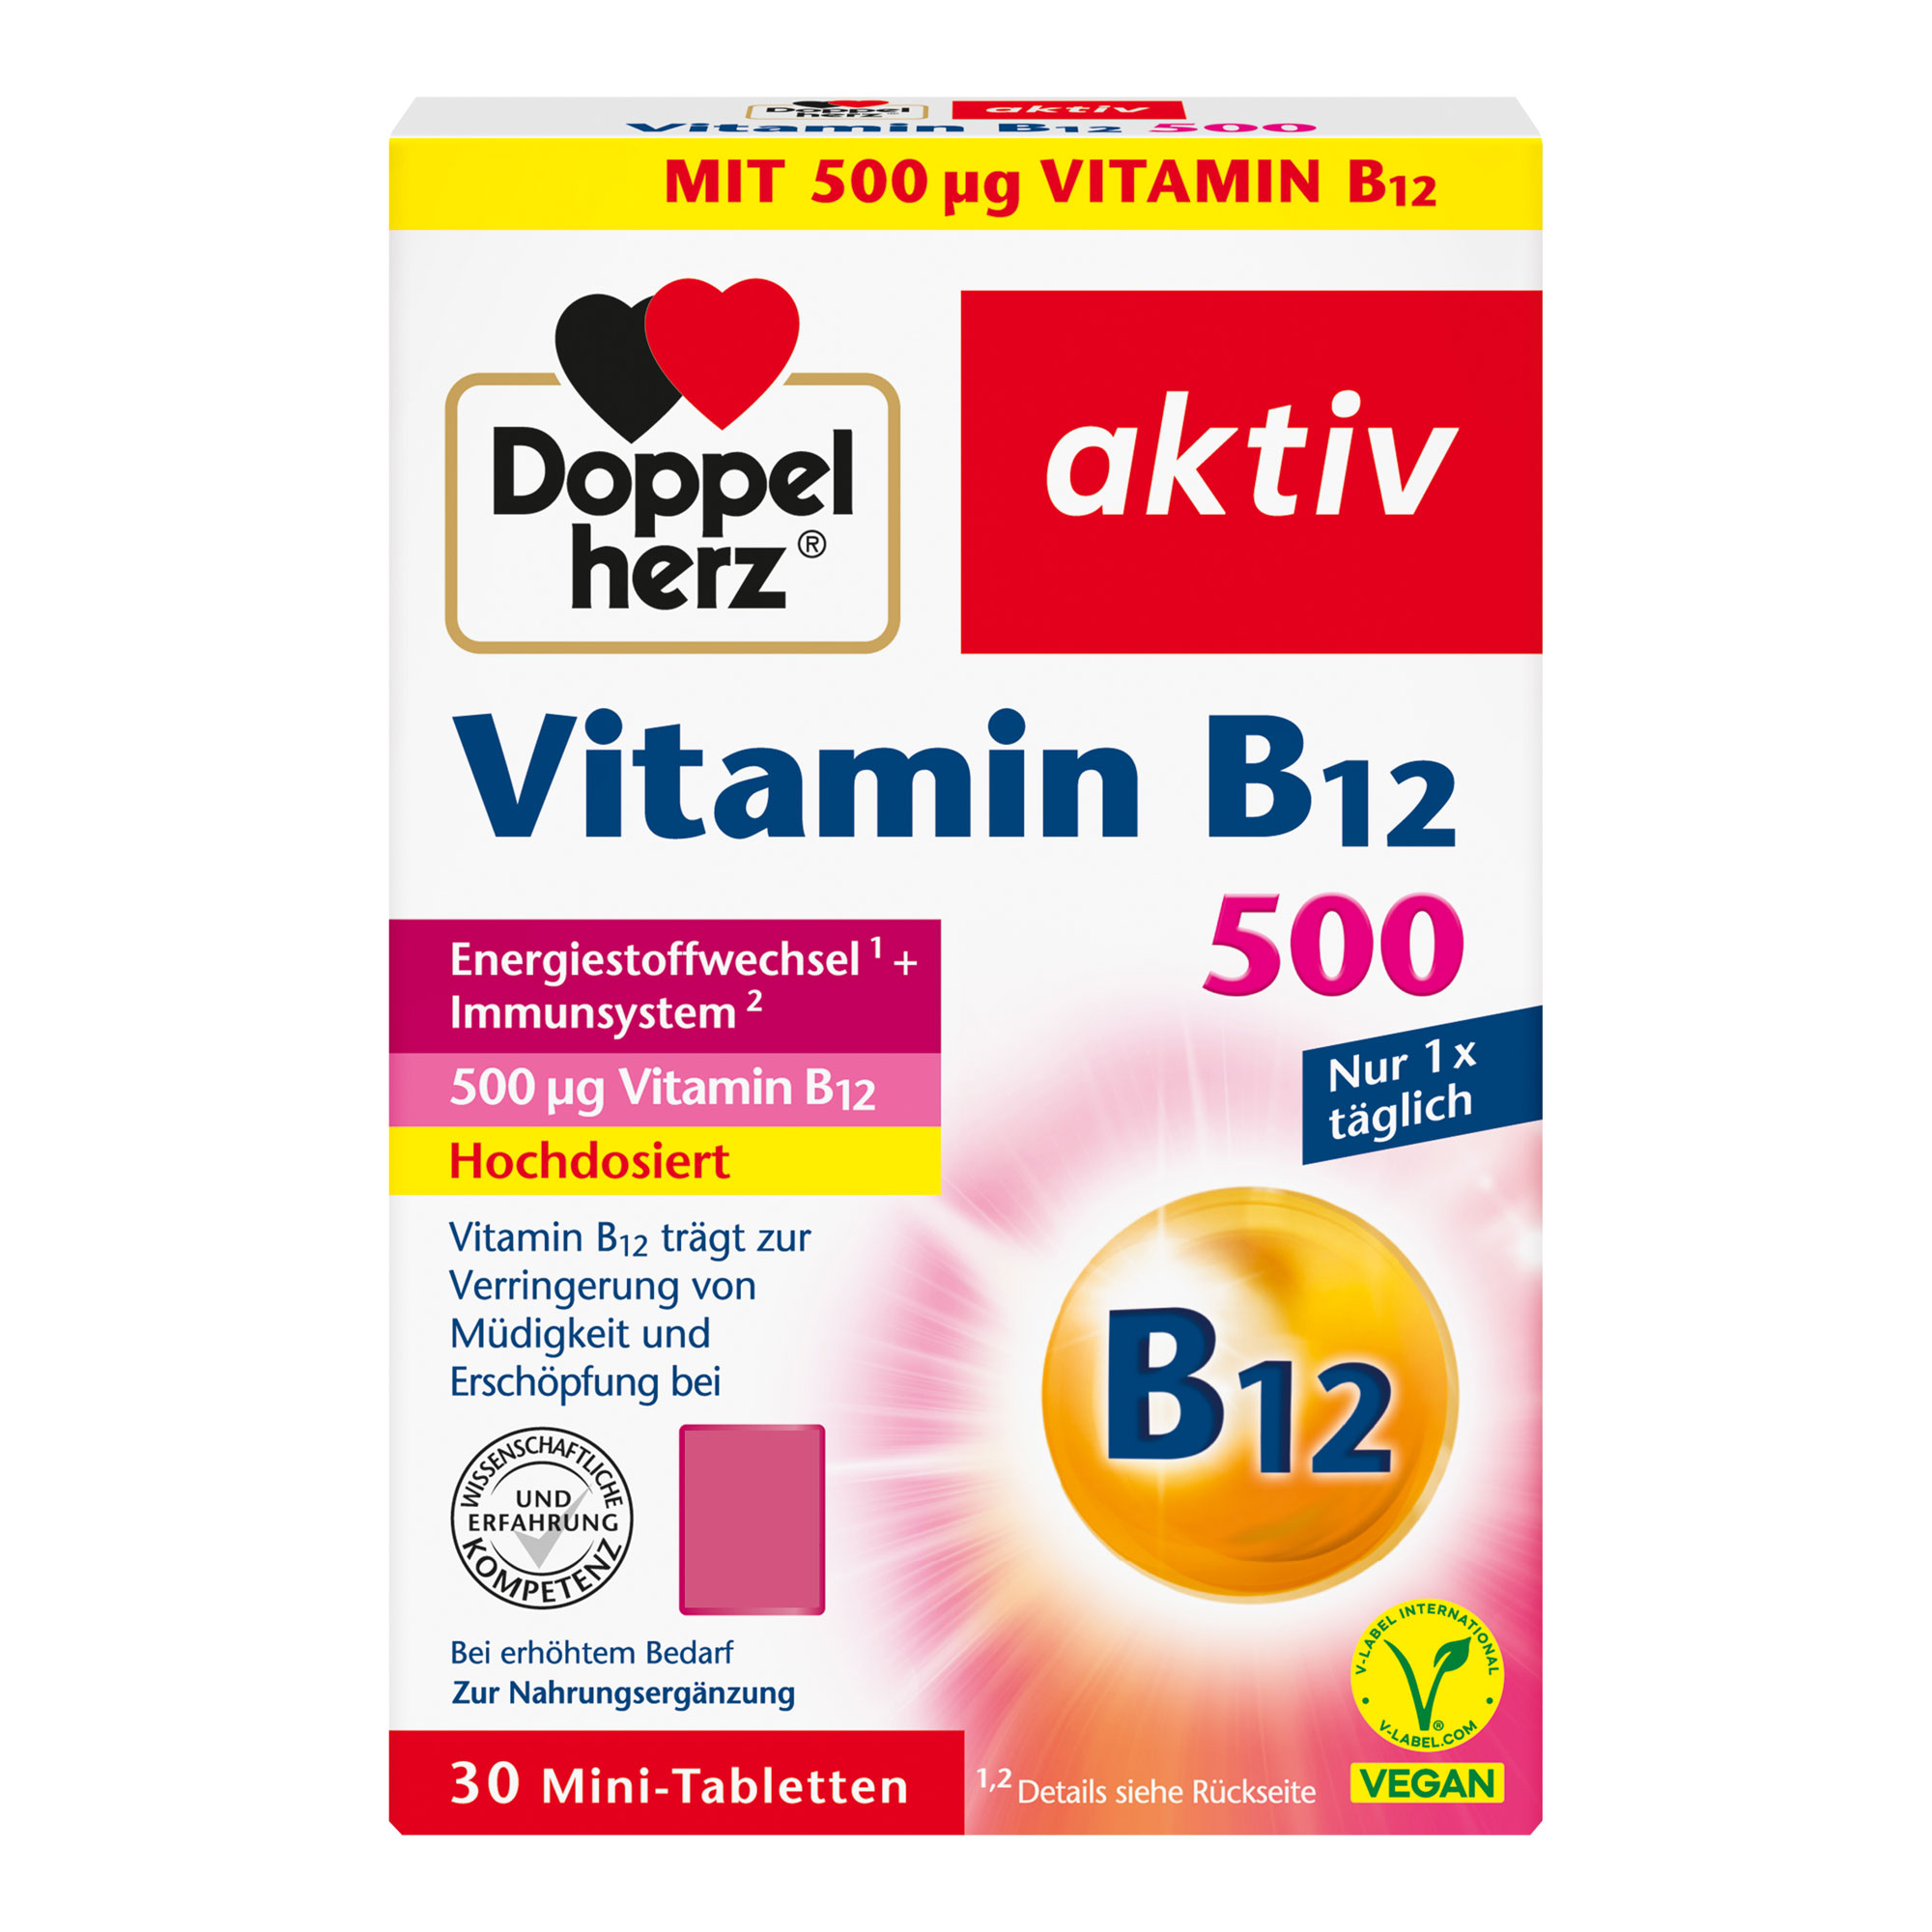 Nahrungsergänzungsmittel mit hochdosiertem Vitamin B12.